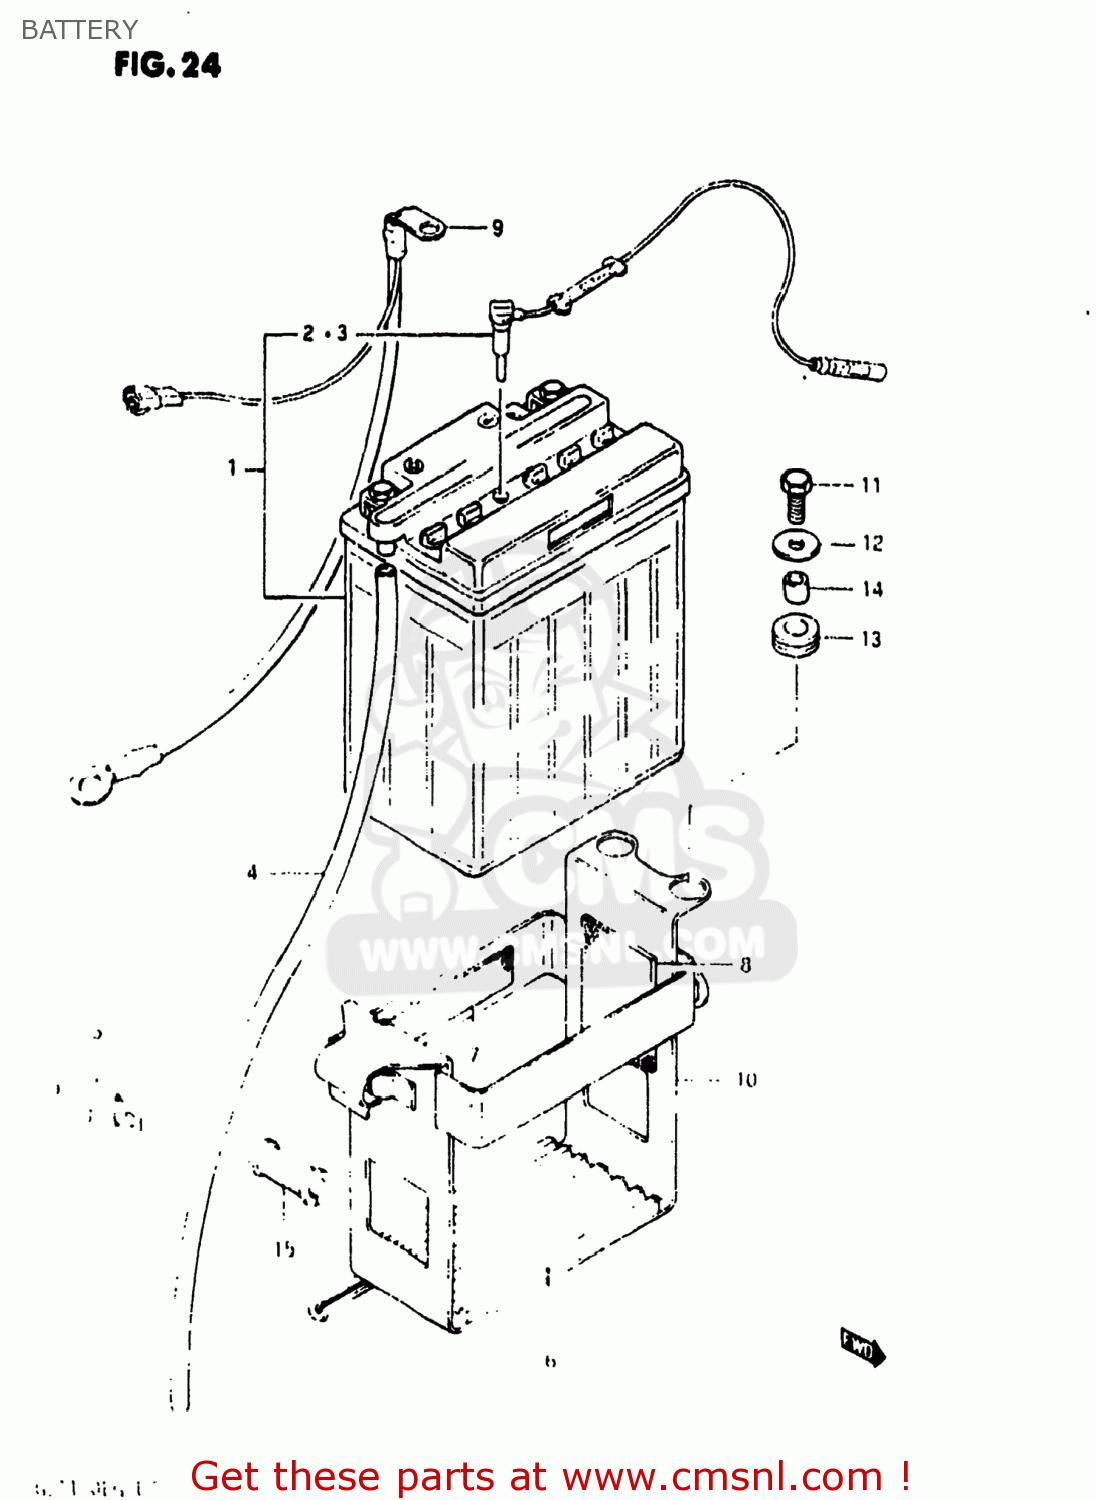 1980 suzuki gs750 14valve wiring diagram